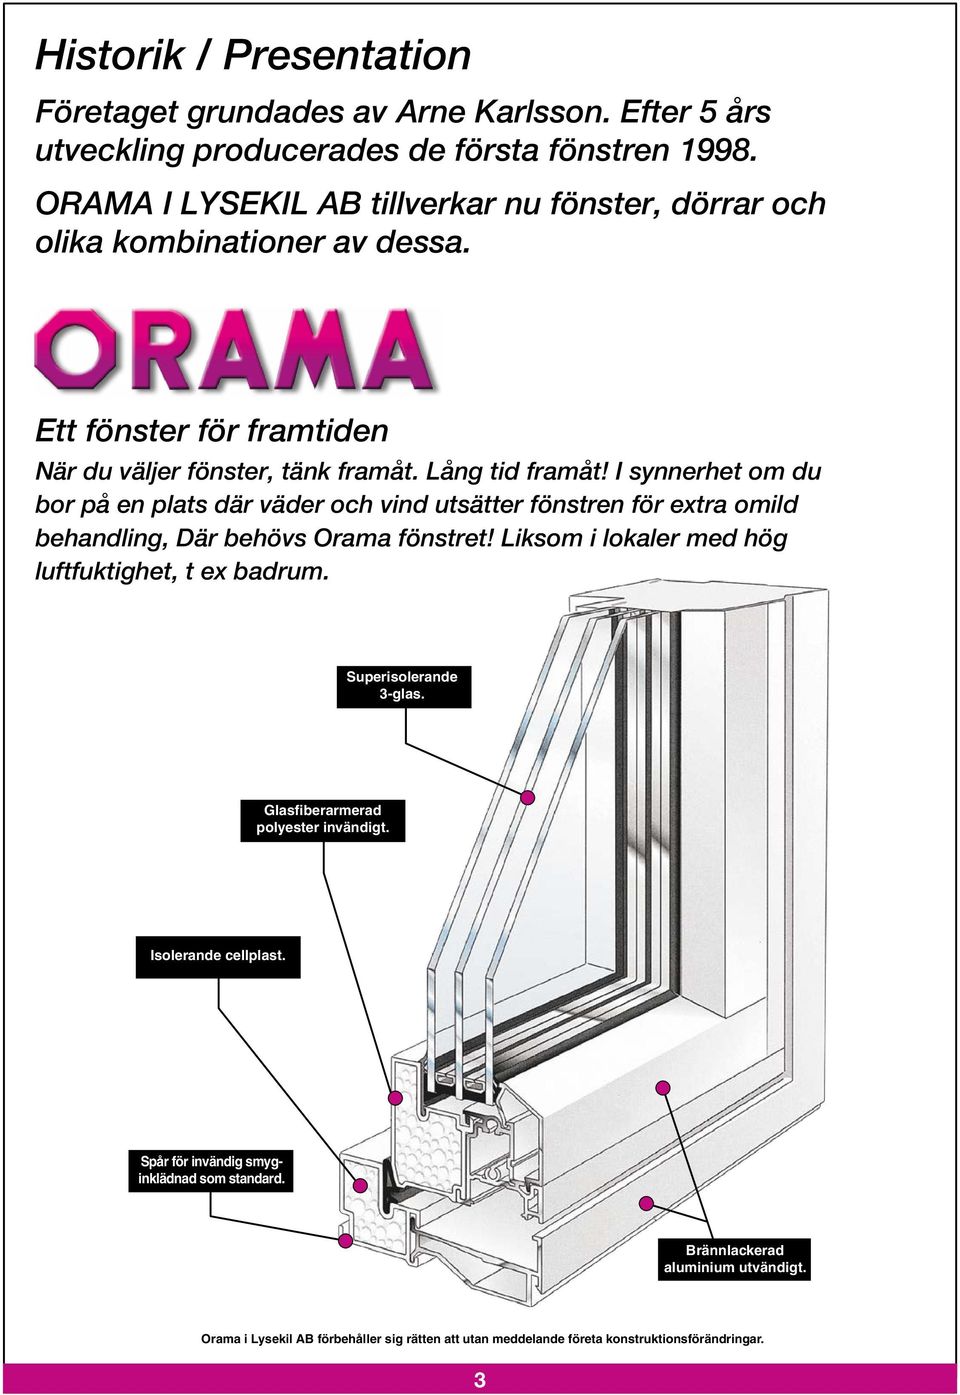 I synnerhet om du bor på en plats där väder och vind utsätter fönstren för extra omild behandling, Där behövs Orama fönstret! Liksom i lokaler med hög luftfuktighet, t ex badrum.